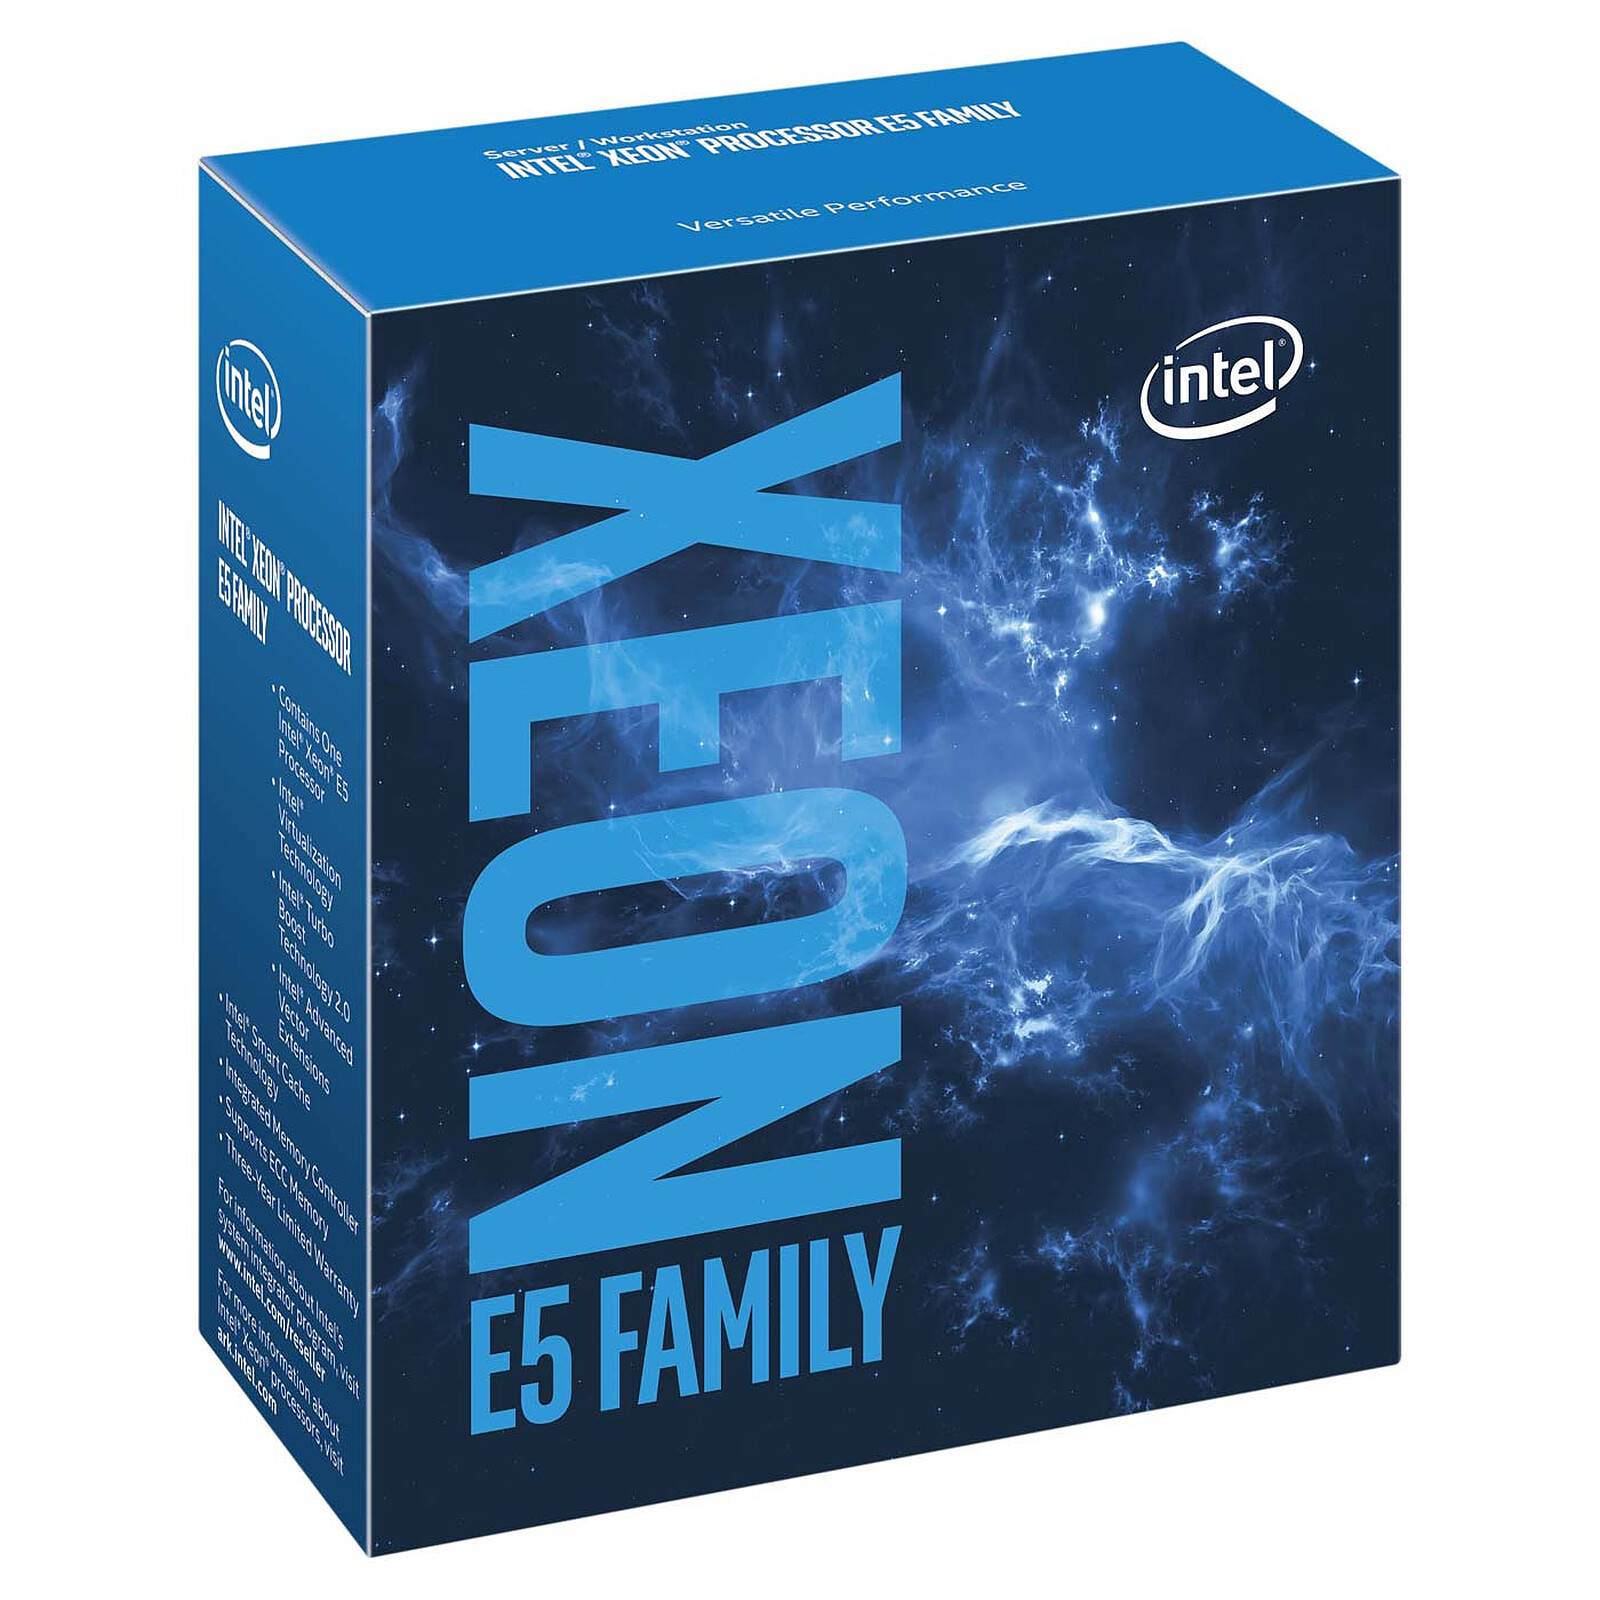 Intel Xeon E5-2620 v4 (2.1 GHz)